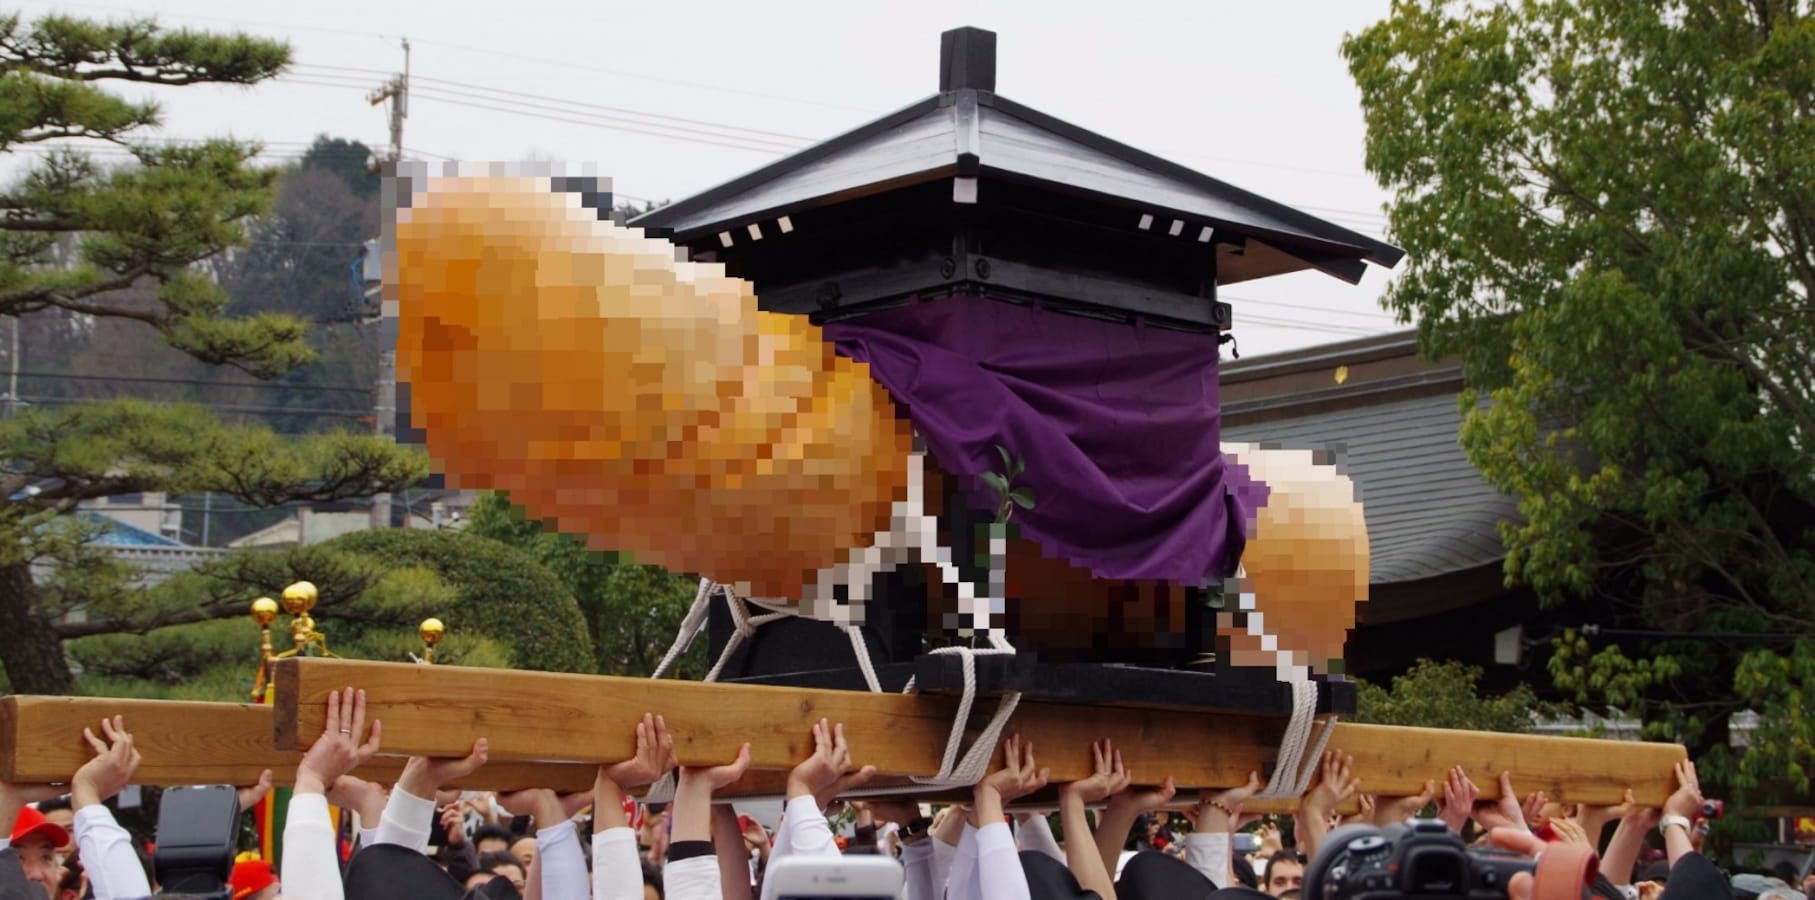 Japan Penis Festival